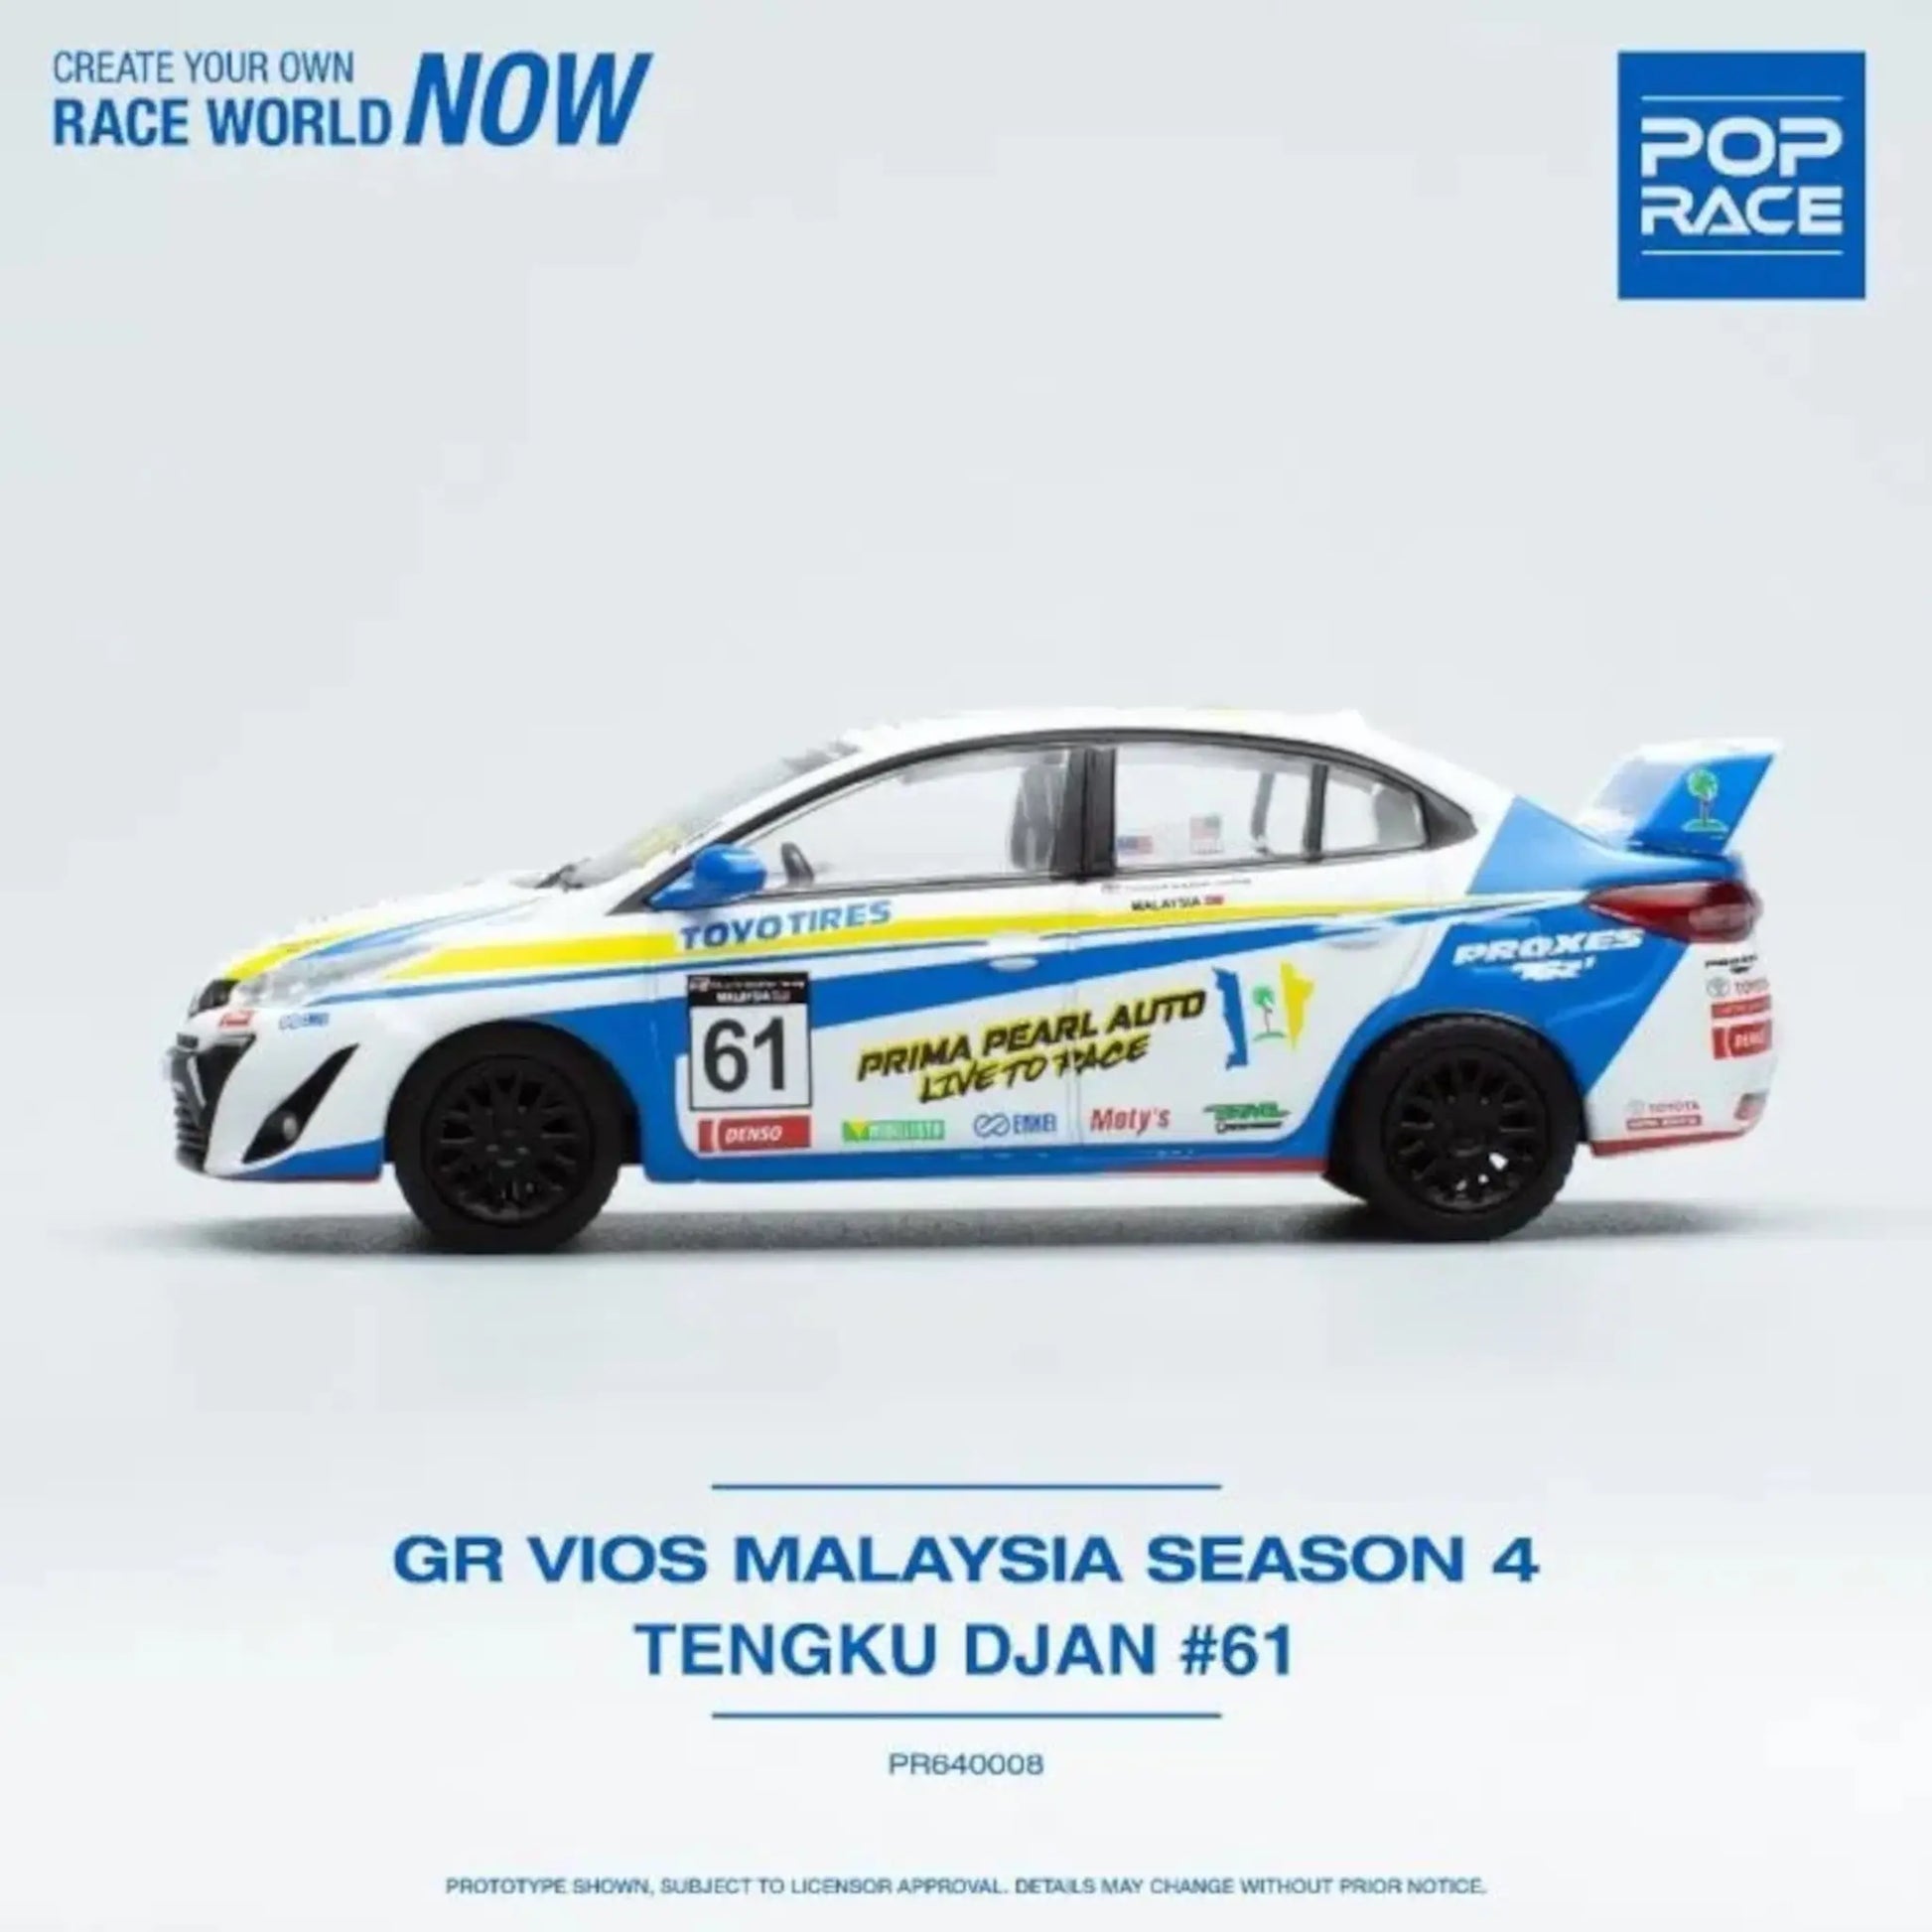 Toyota GR VIOS #61 Tengku Djan Malaysia Season 4 with Figure Pop Race 1/64 | Motors Miniatures